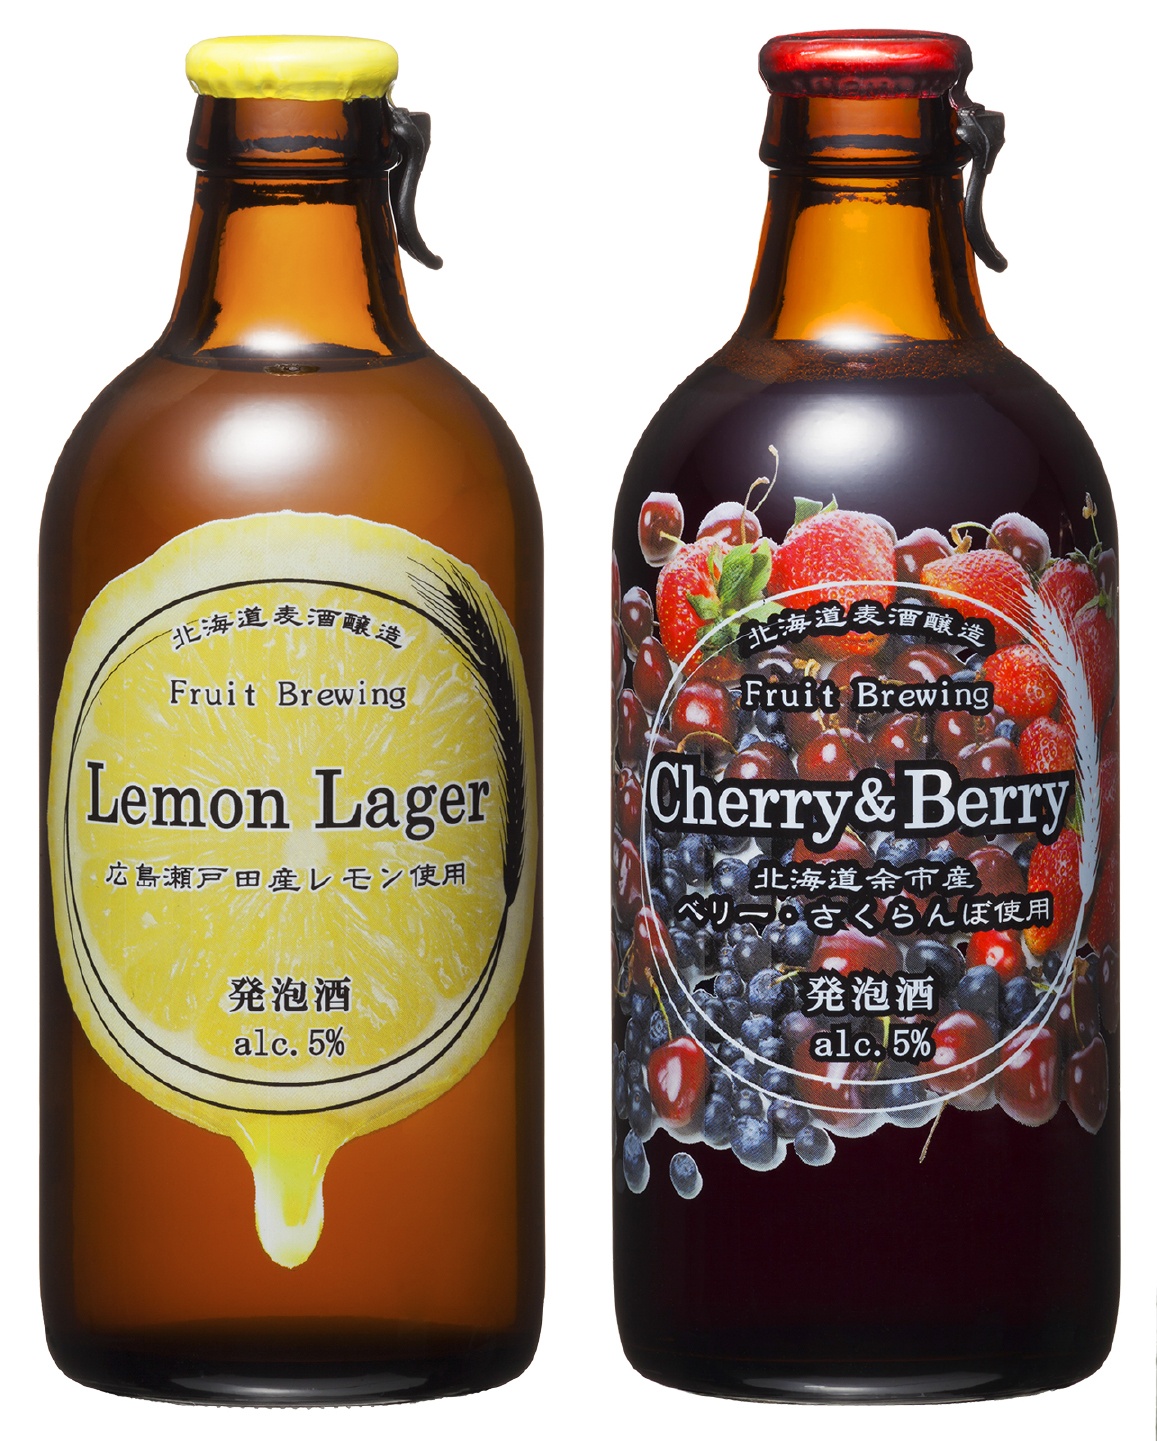 2. เบียร์ผลไม้ Fruit Brewing จาก Hokkaido